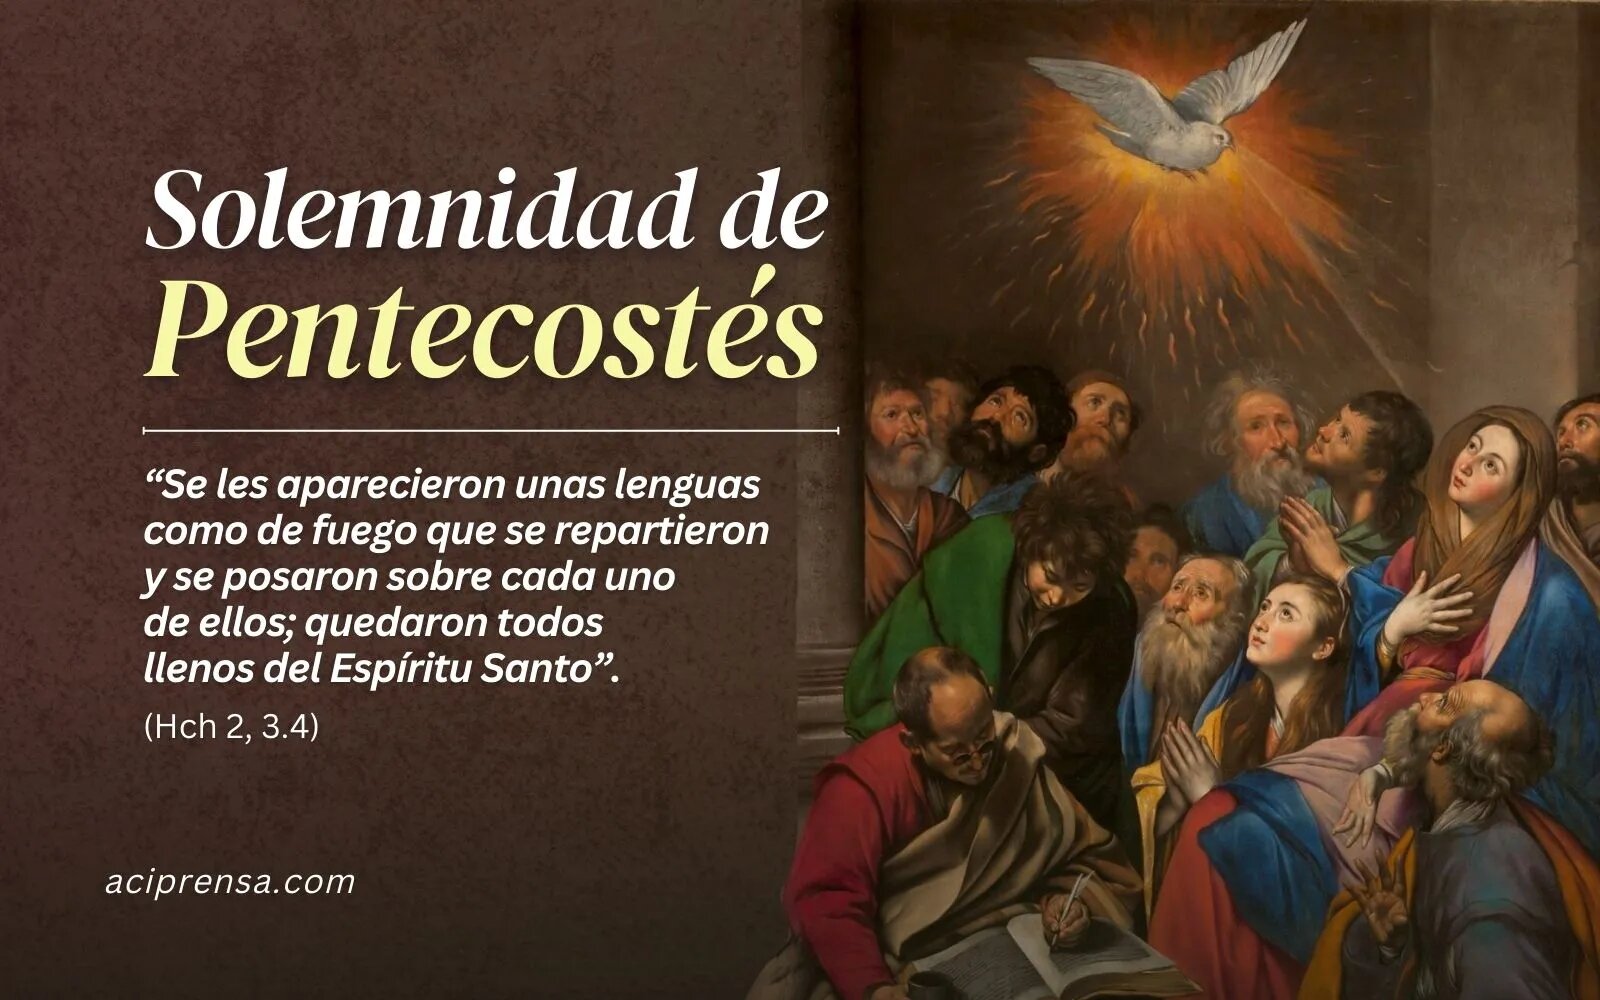 Hoy celebramos la Solemnidad de Pentecostés, día del Espíritu Santo y del nacimiento de la Iglesia